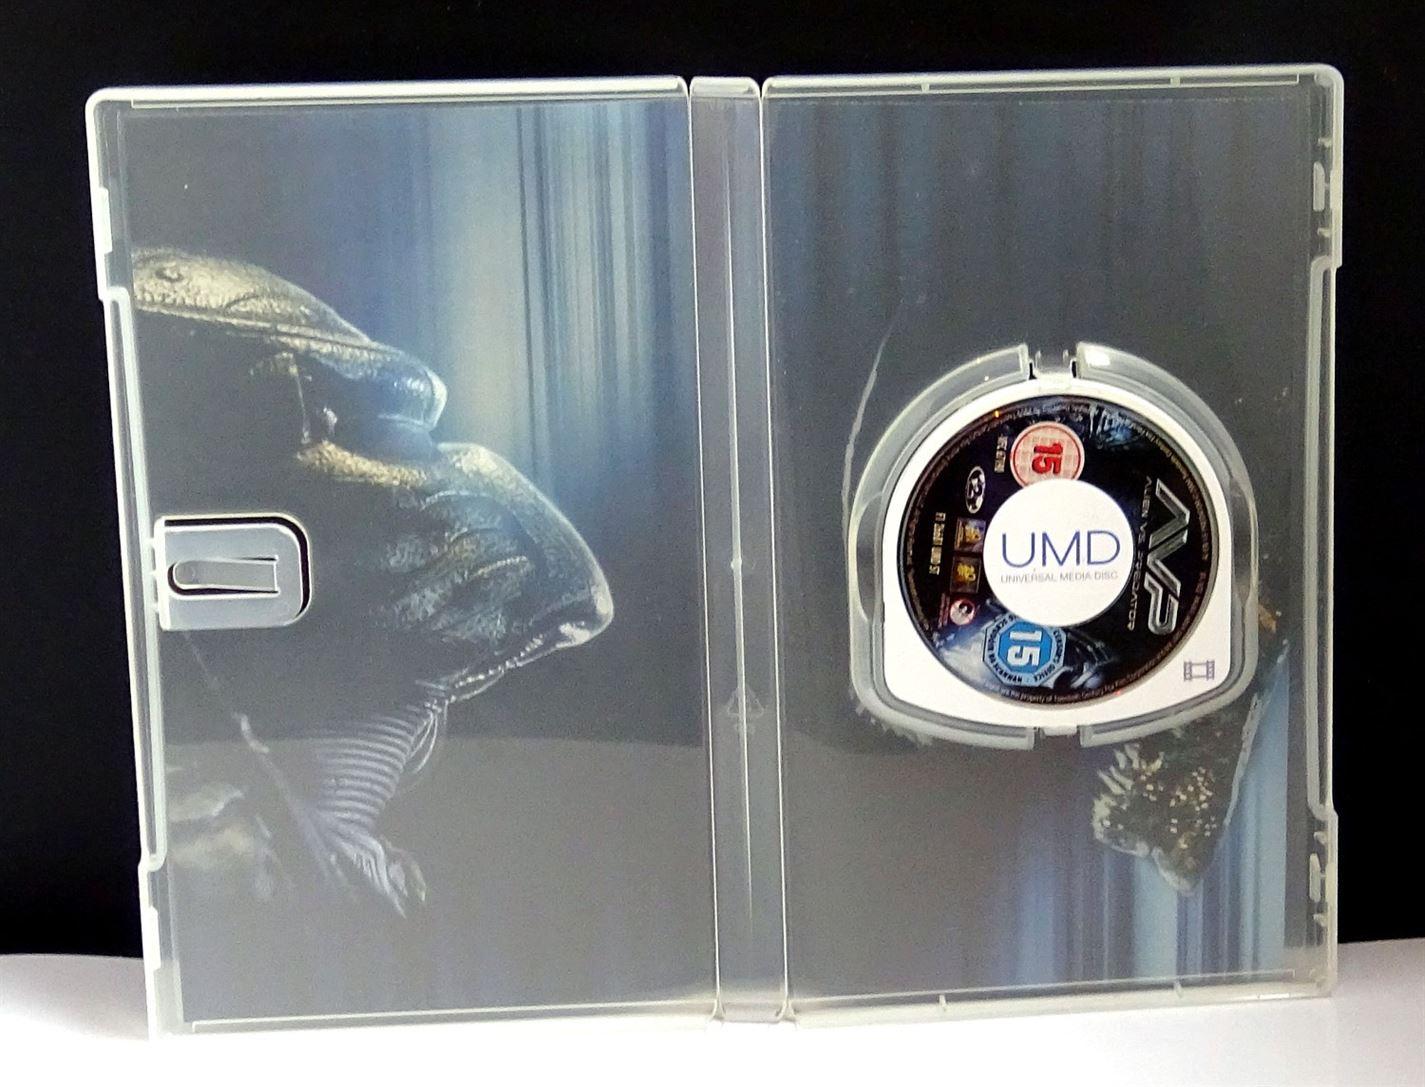 Alien vs Predator - (UMD Mini for PSP) - UK Seller